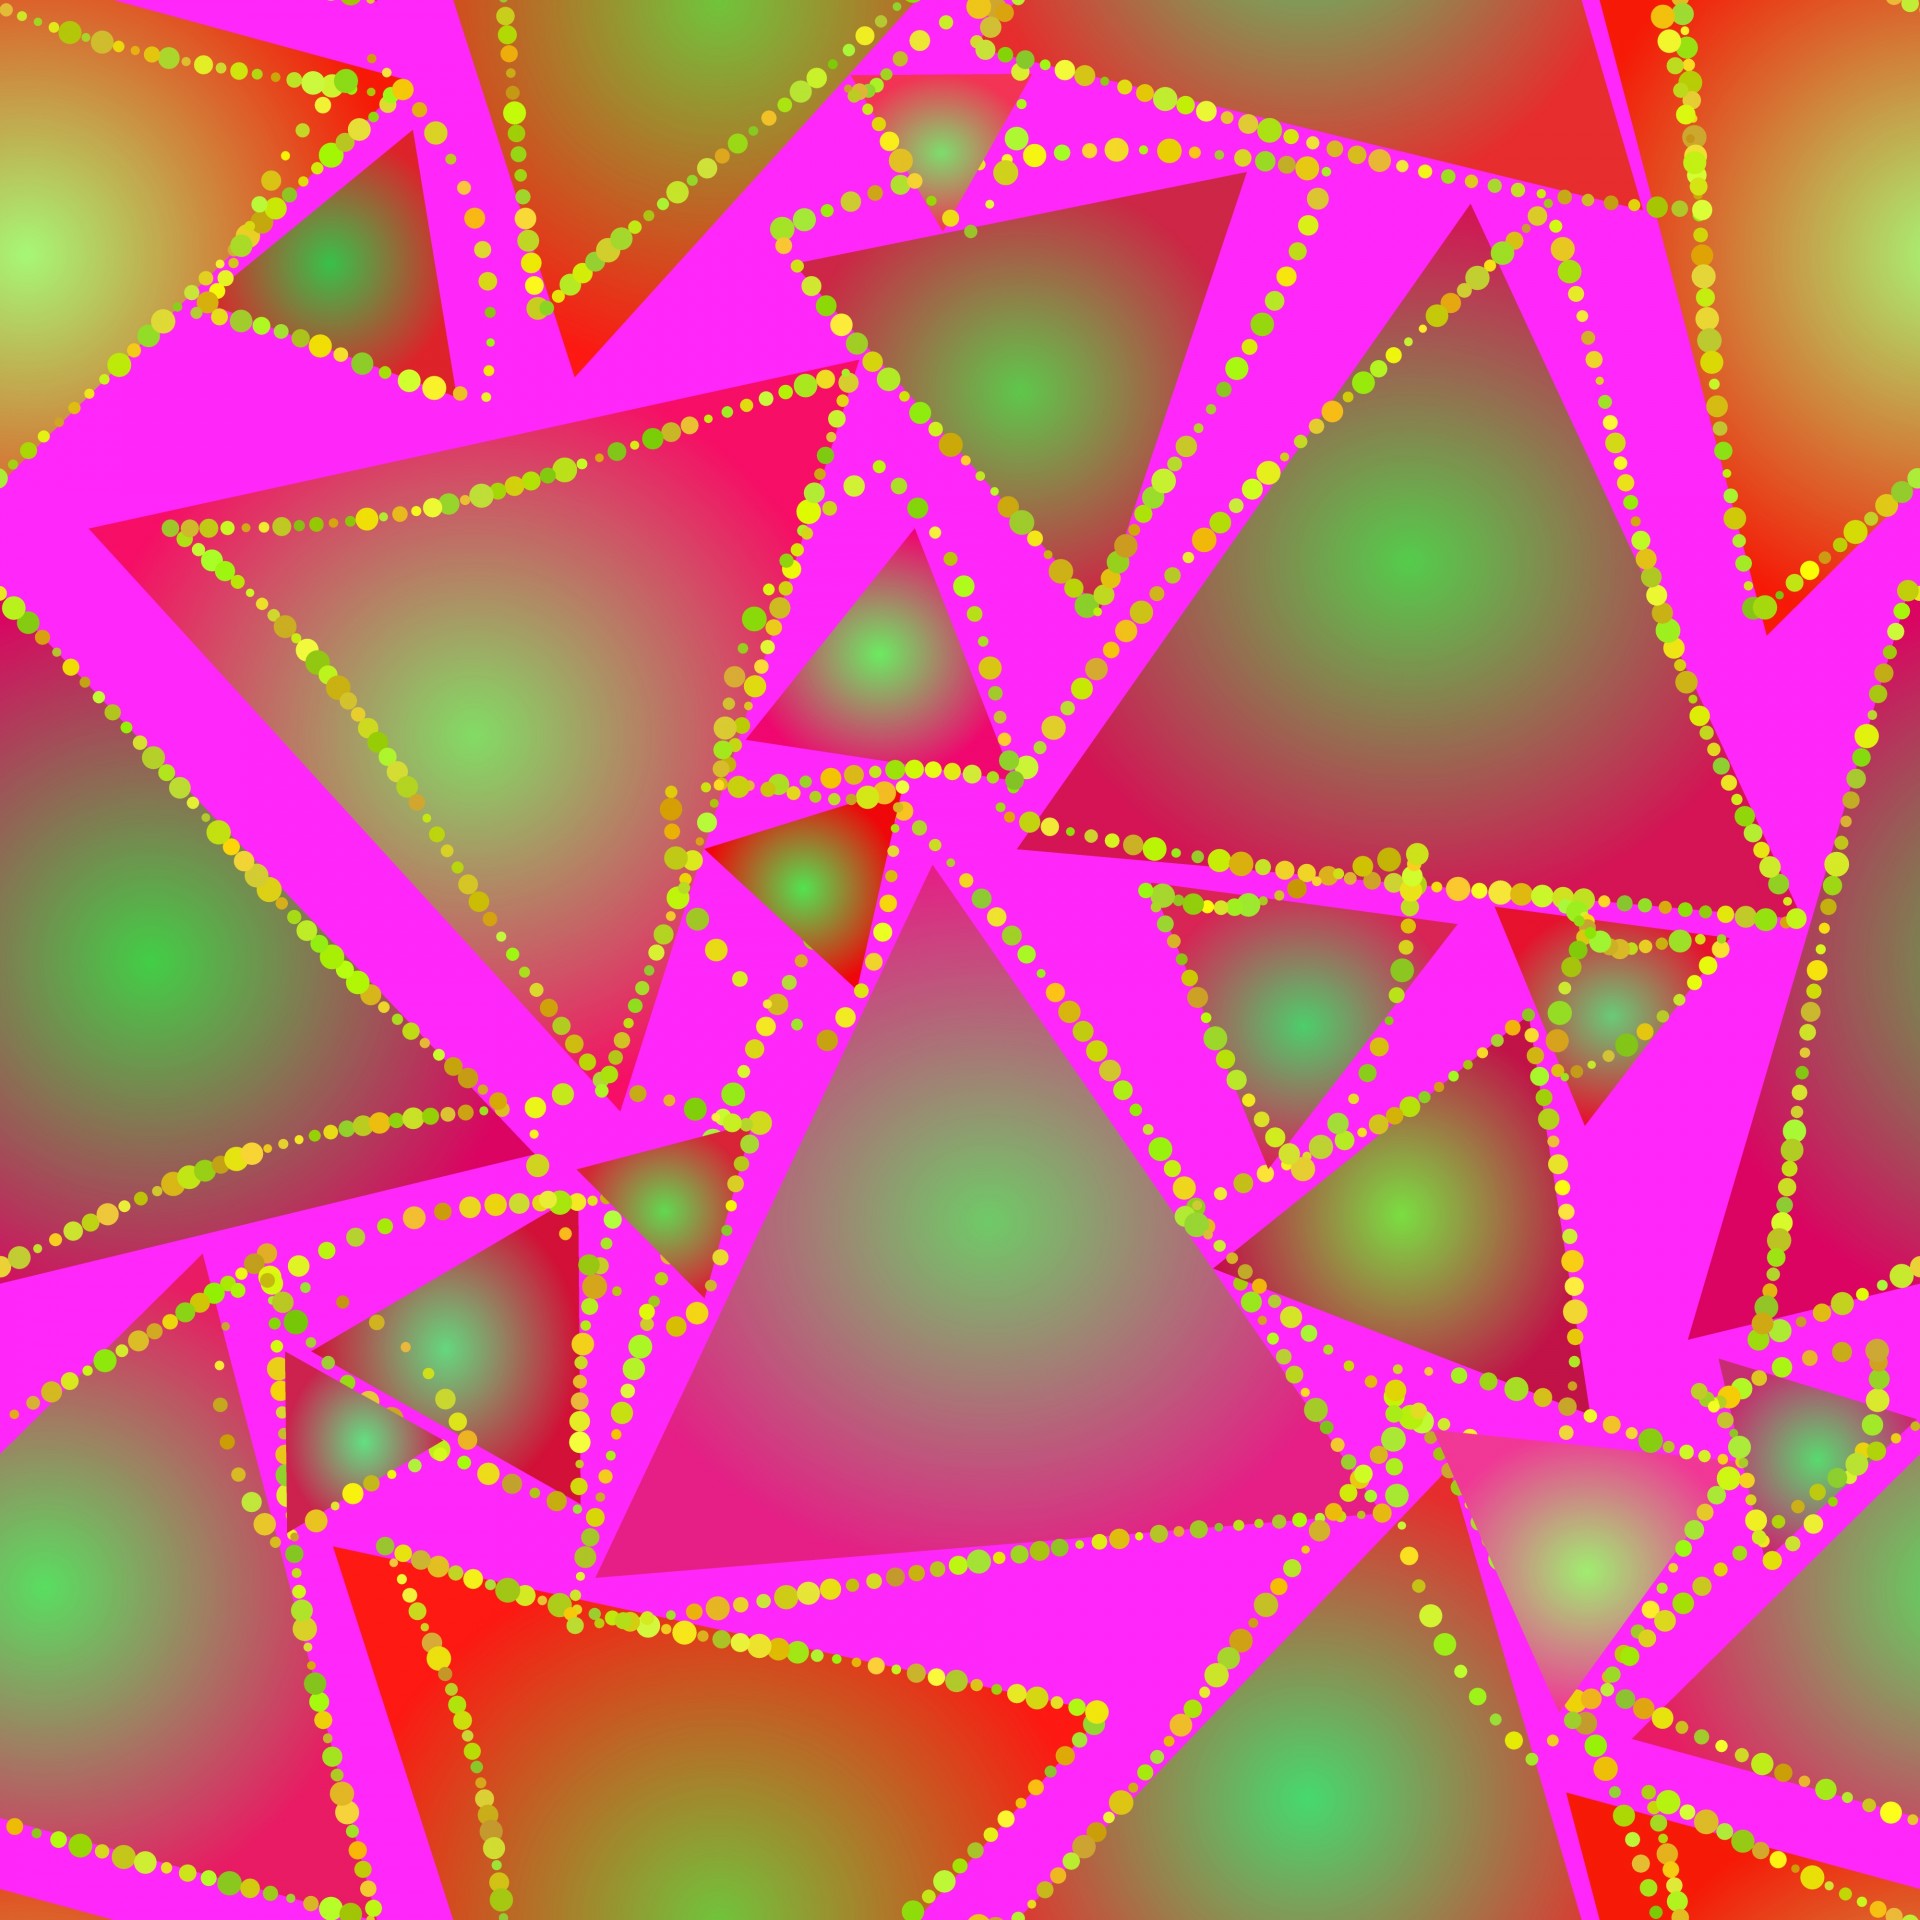 dazzle dazzling triangles free photo